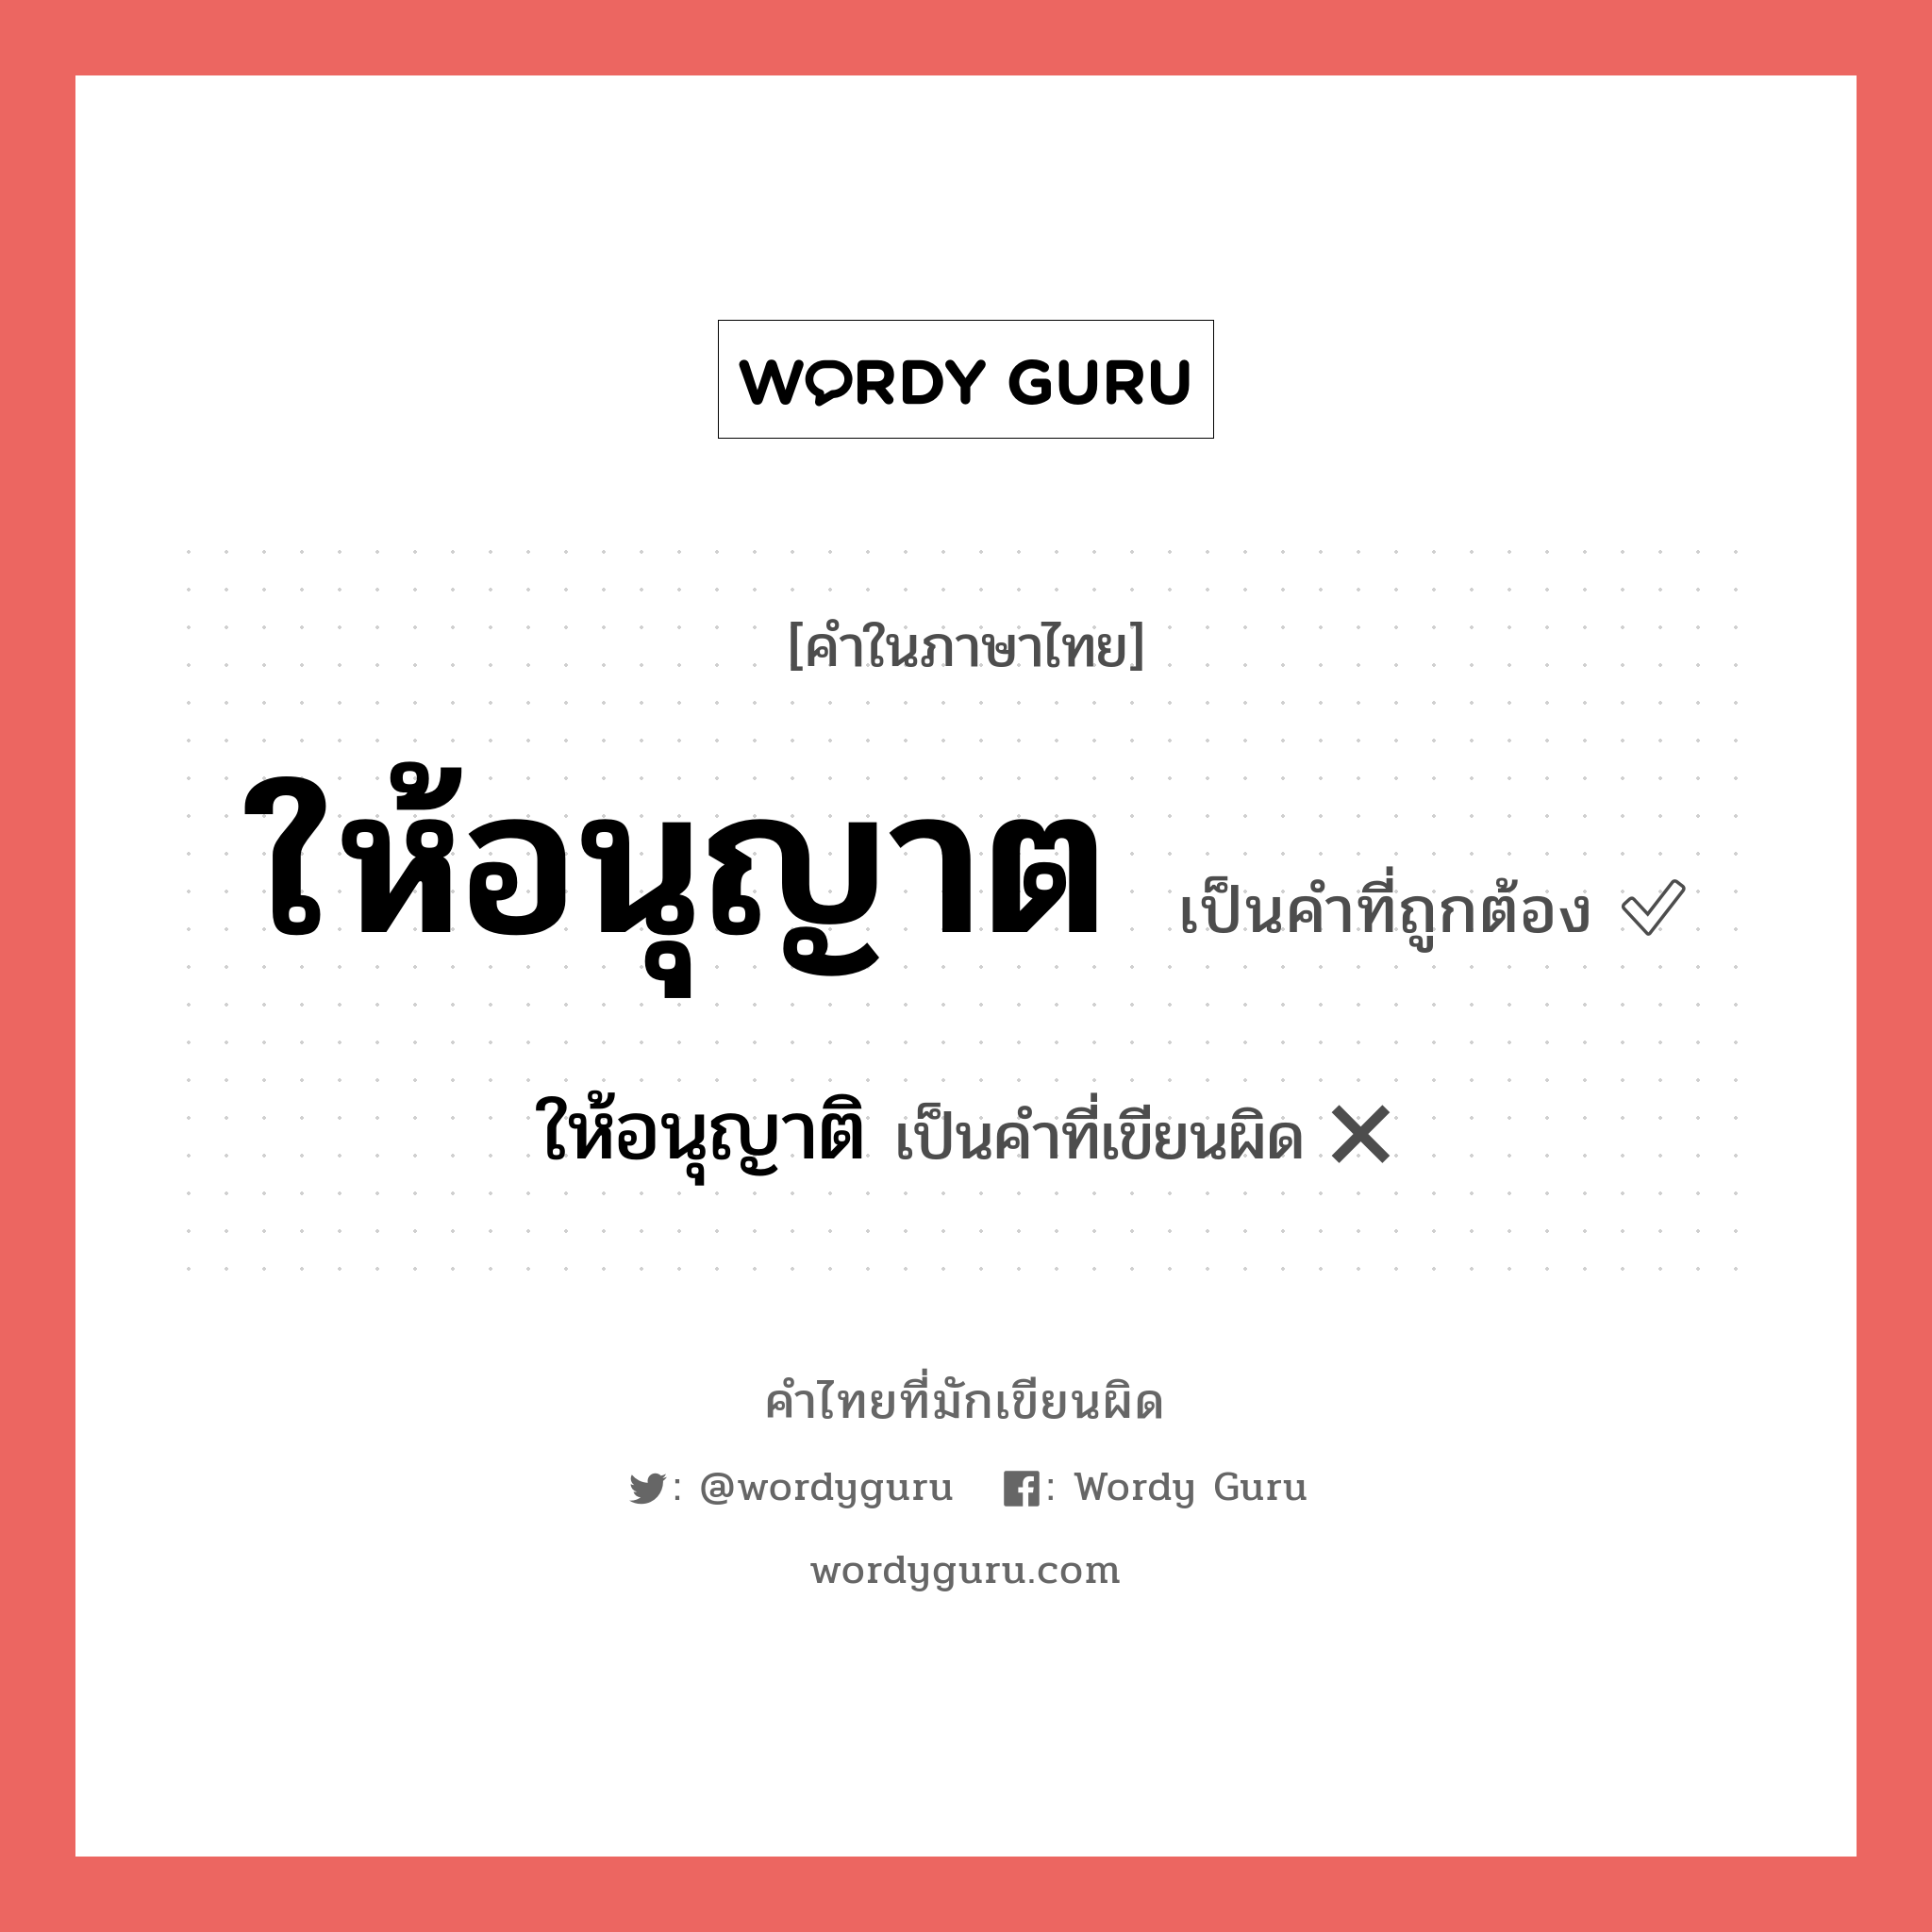 ให้อนุญาต หรือ ให้อนุญาติ คำไหนเขียนถูก?, คำในภาษาไทยที่มักเขียนผิด ให้อนุญาต คำที่ผิด ❌ ให้อนุญาติ